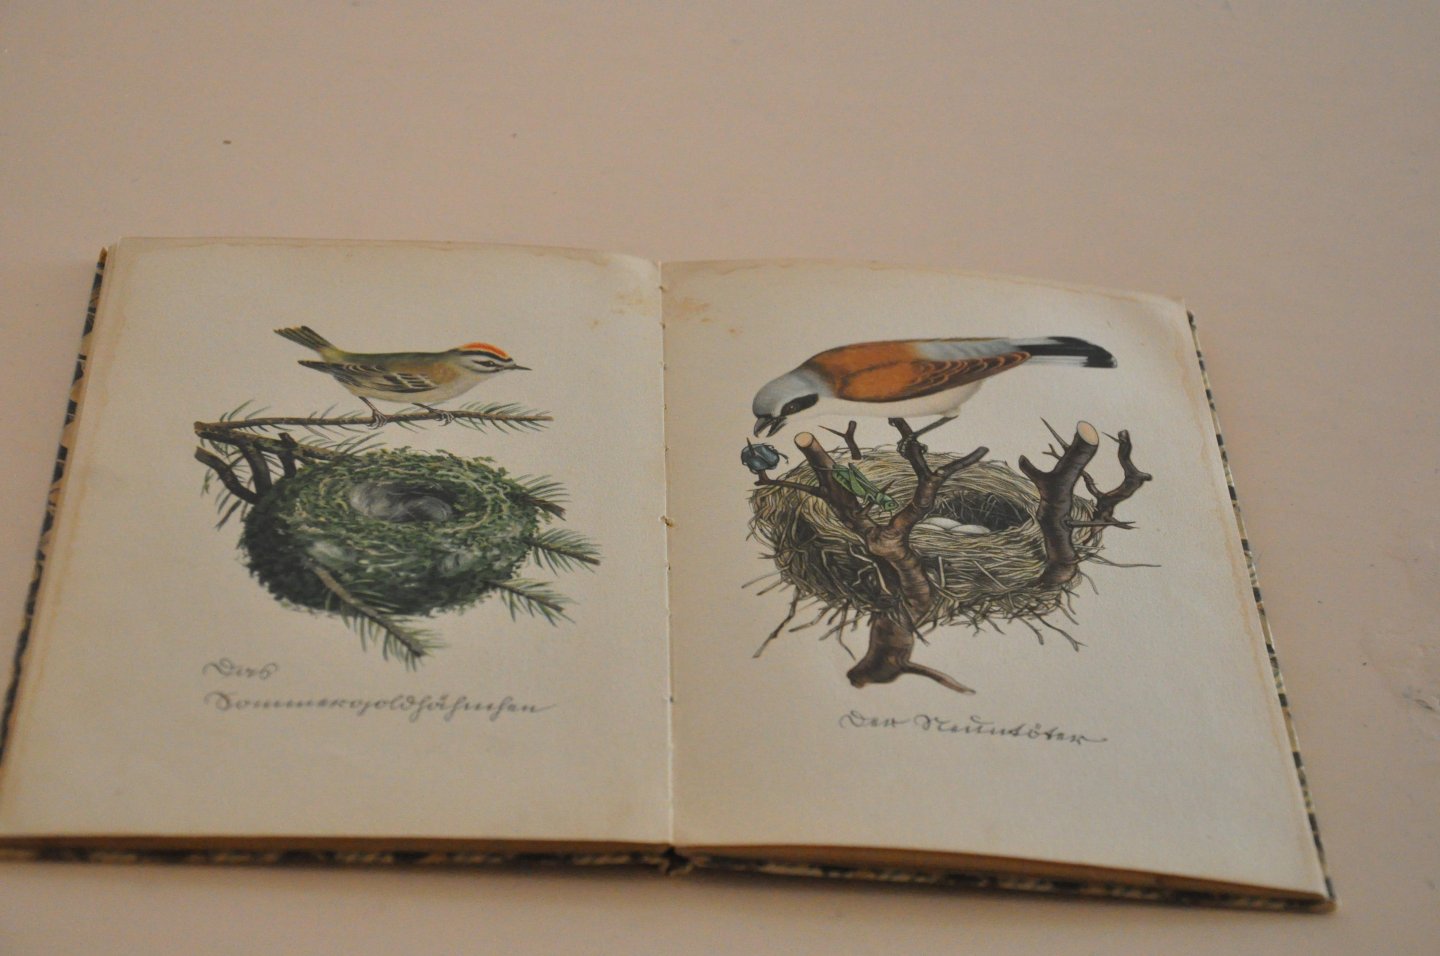 Kredel, Fritz - Das kleine Buch der Vögel und Nester